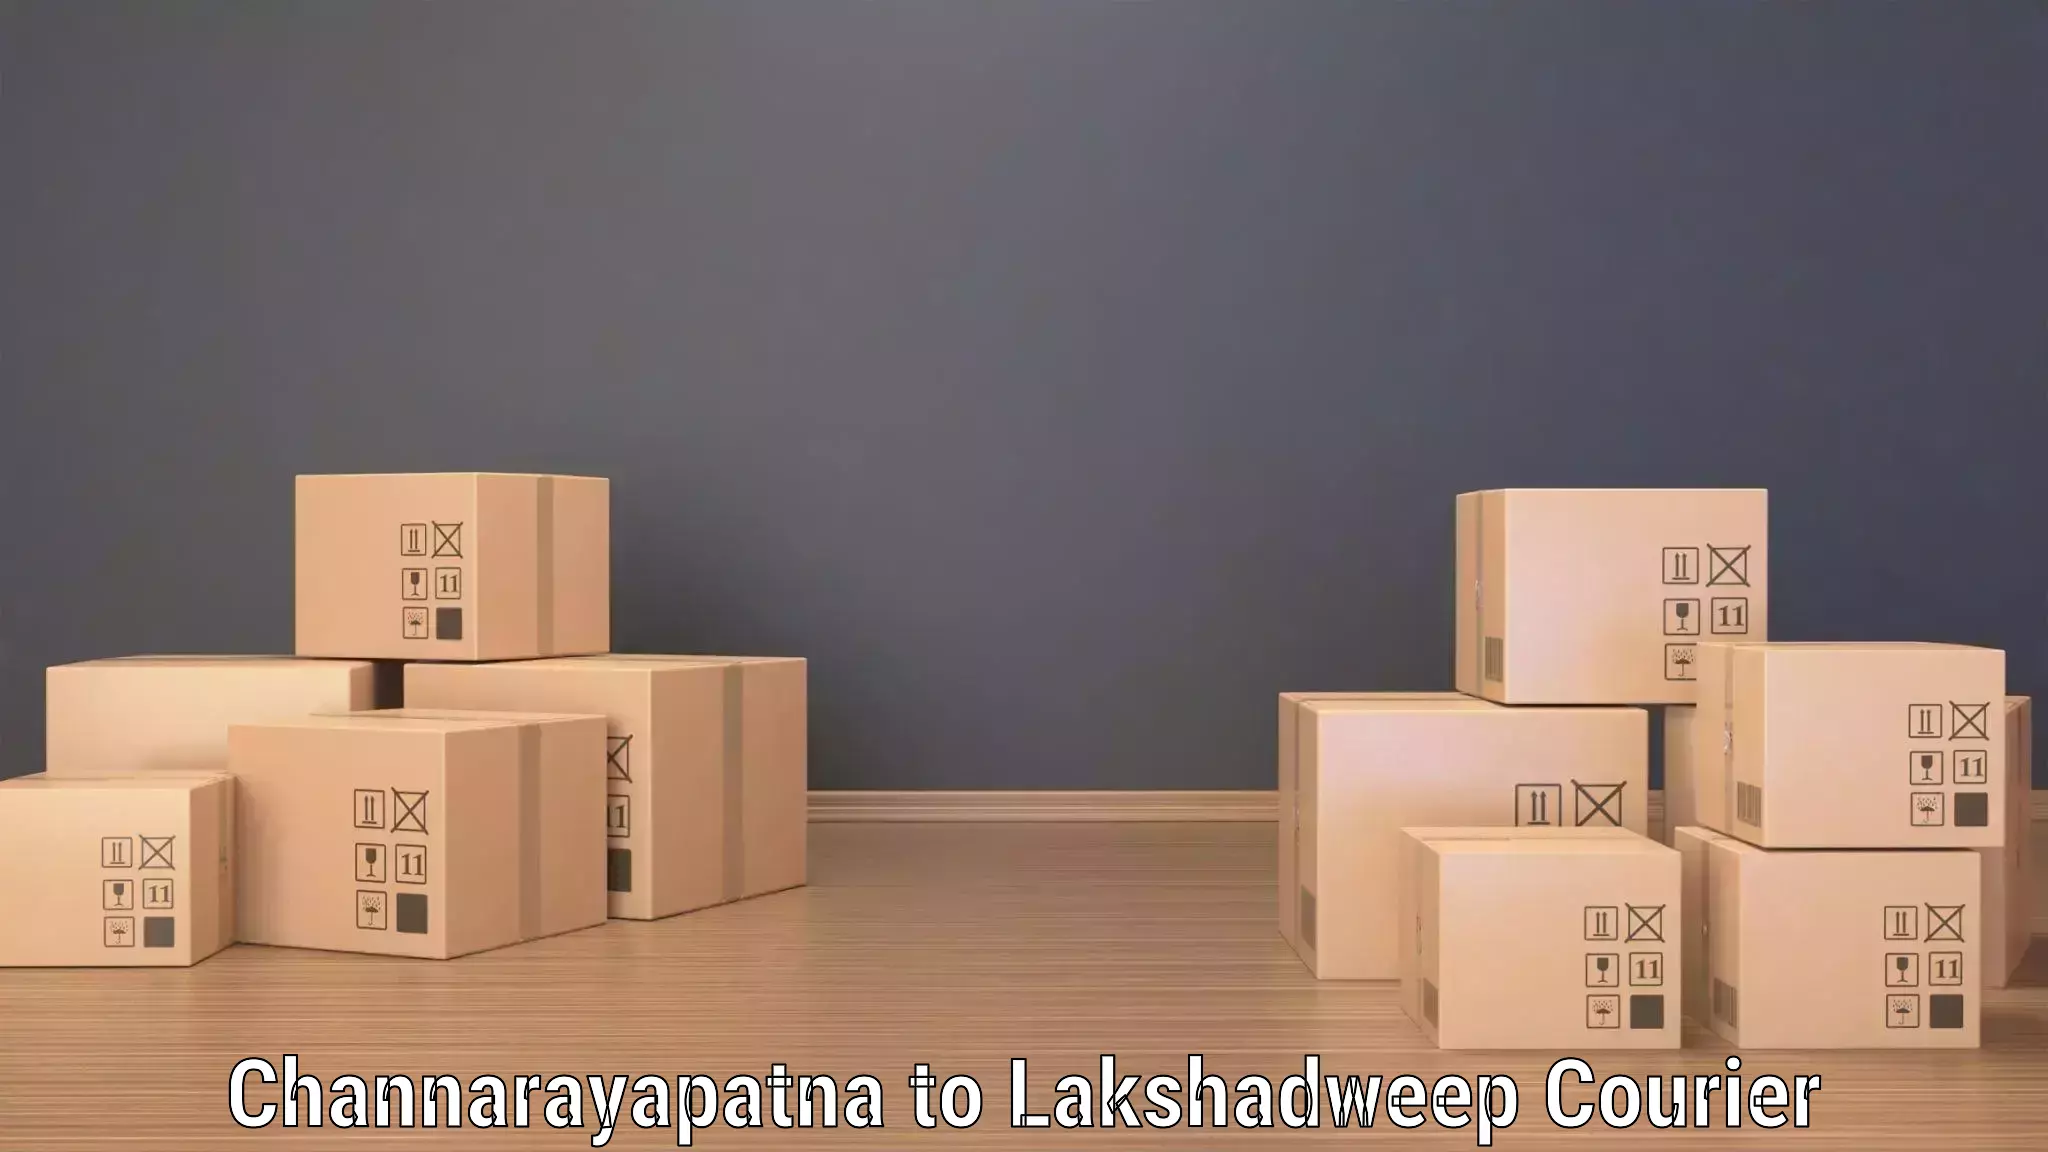 Express mail solutions Channarayapatna to Lakshadweep